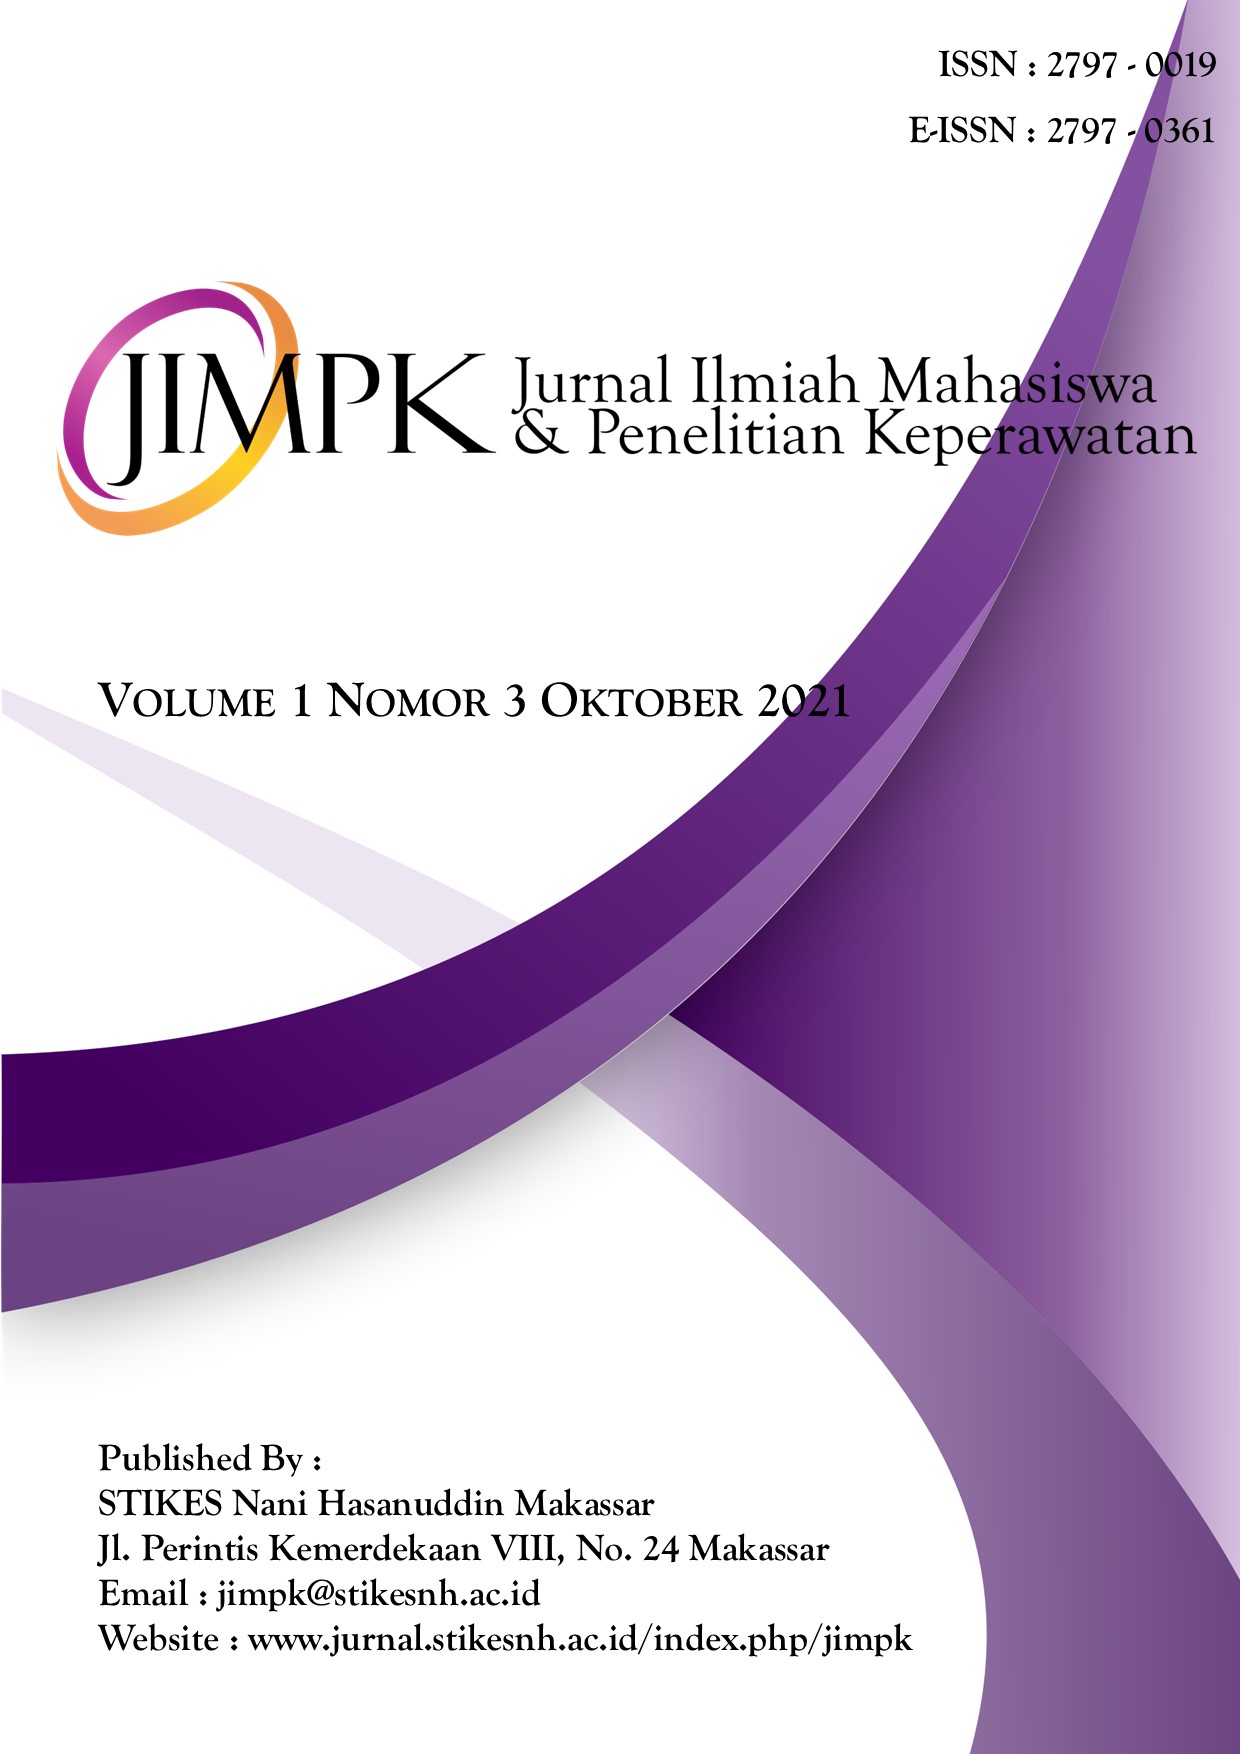 					View Vol. 1 No. 3 (2021): Jurnal Ilmiah Mahasiswa & Penelitian Keperawatan 
				